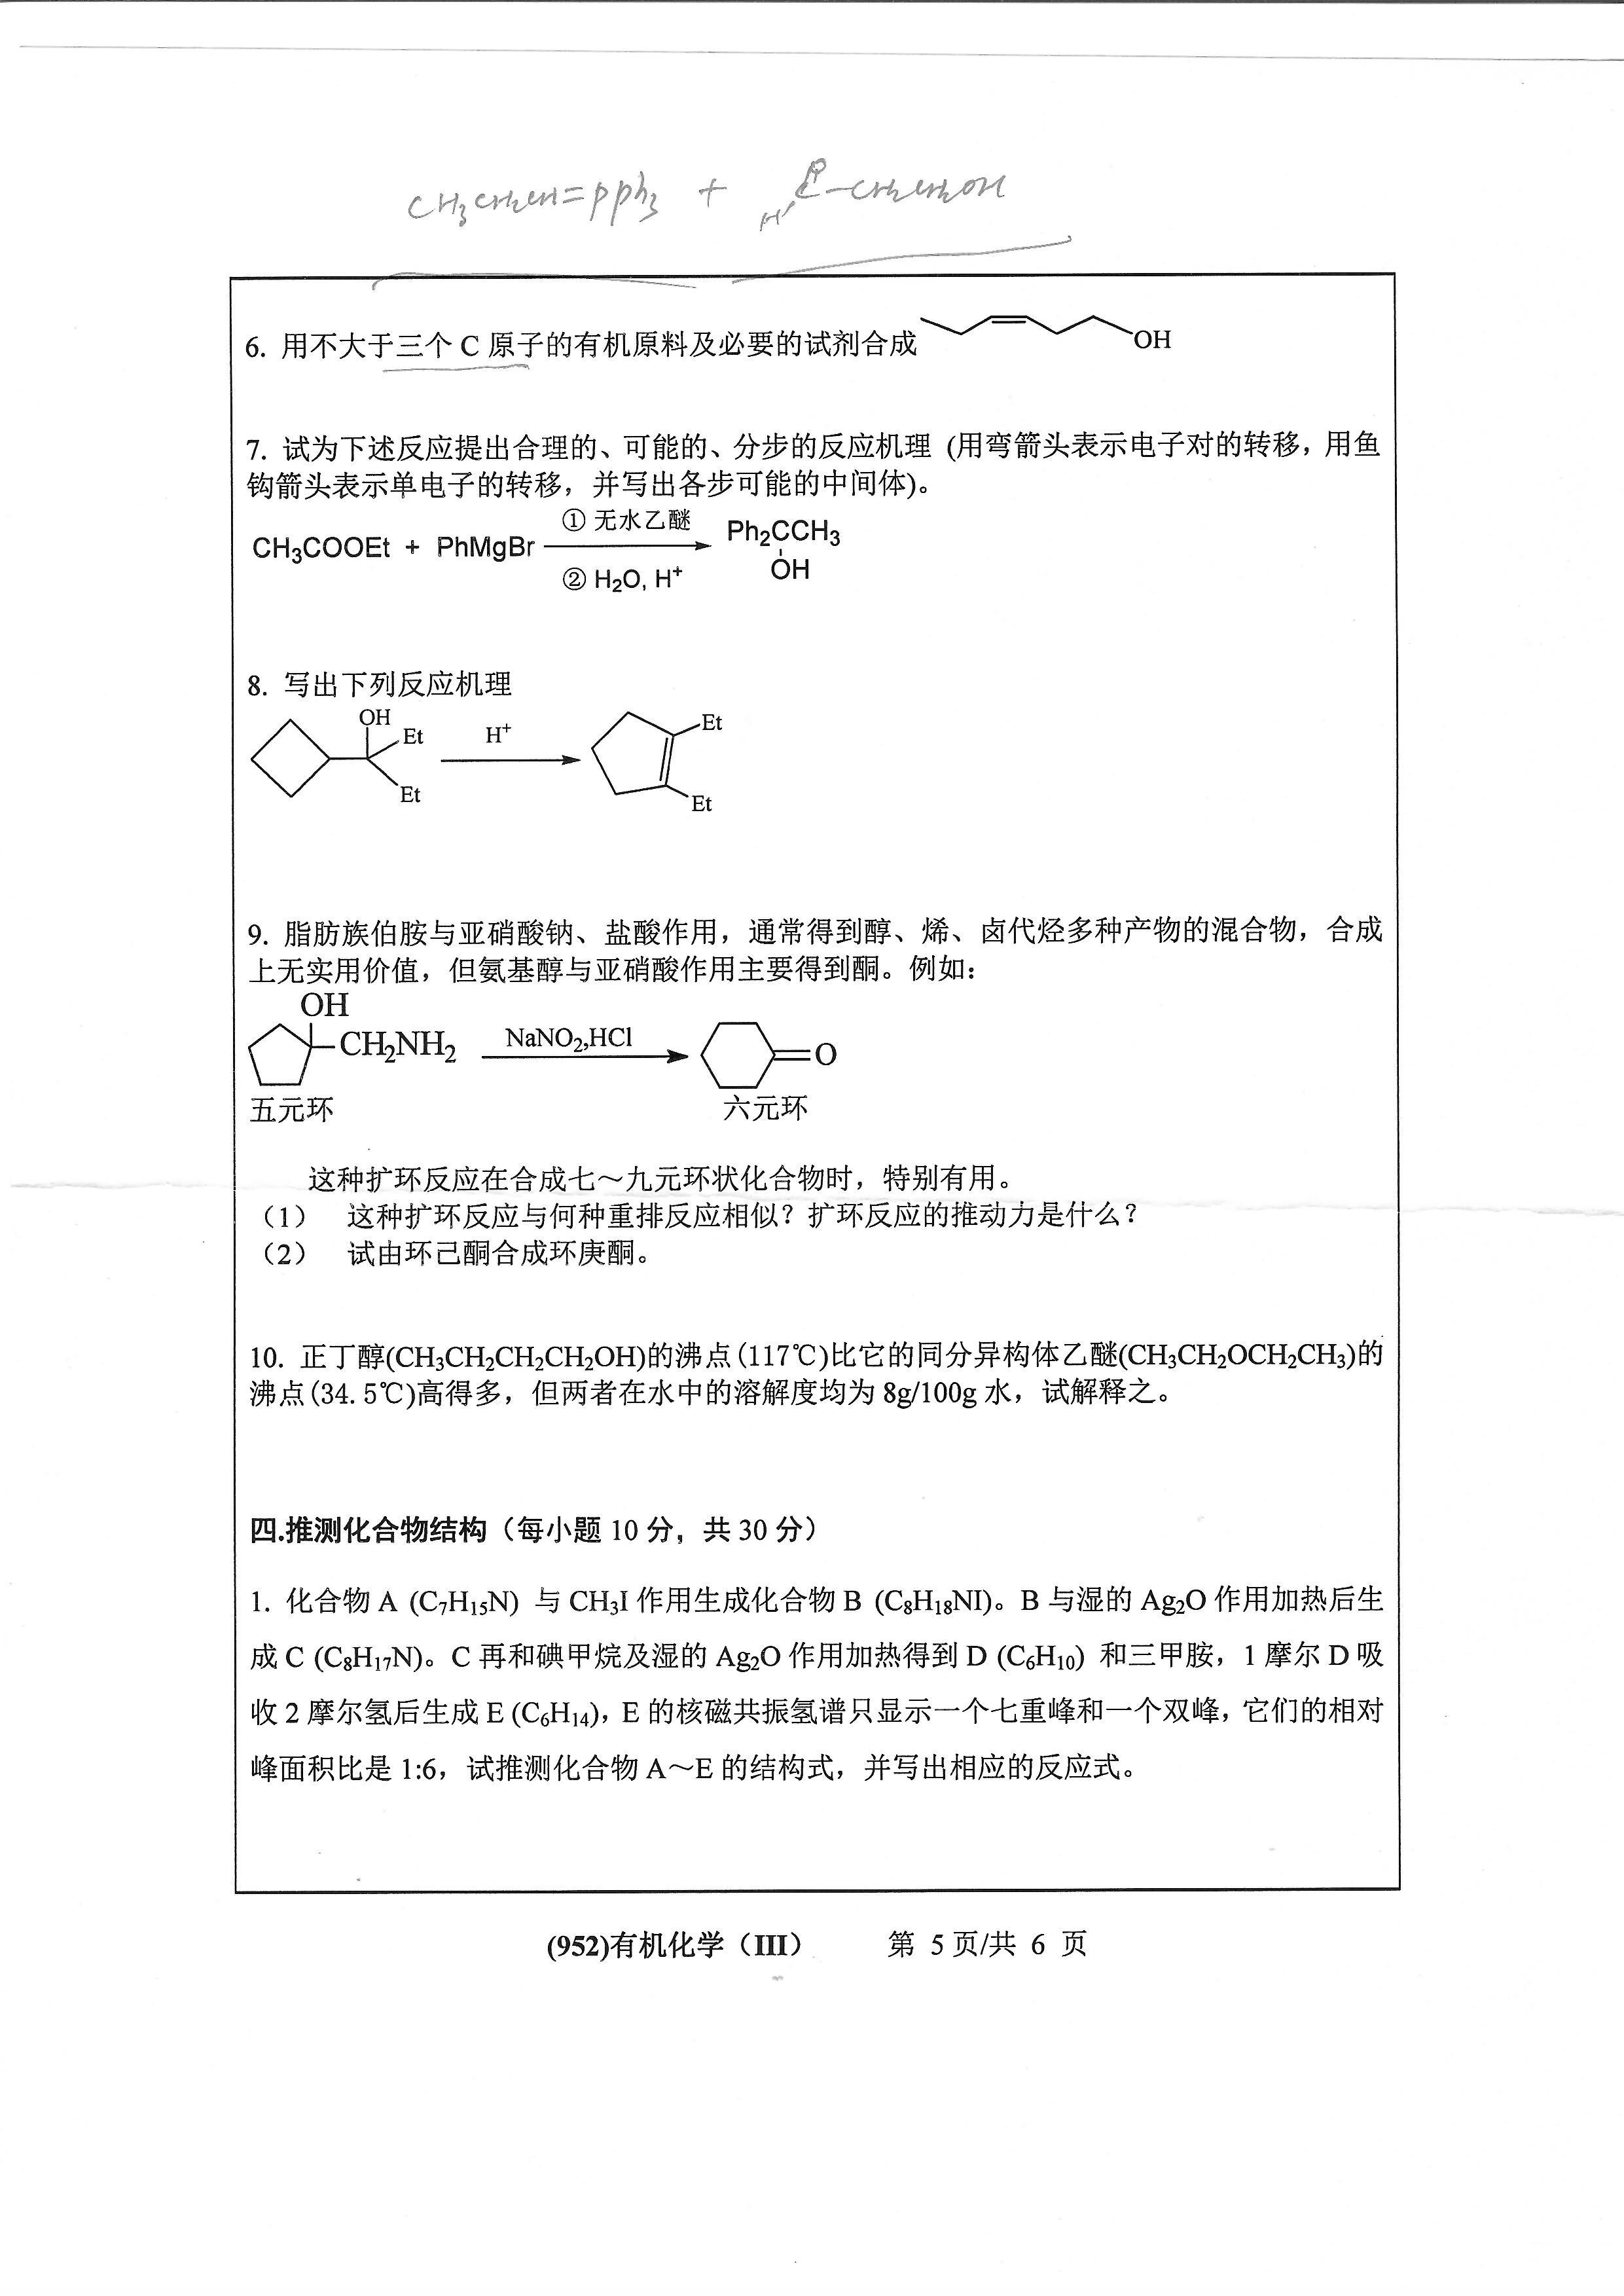 952有机化学（III）2020年考研初试试卷真题（浙江工业大学）